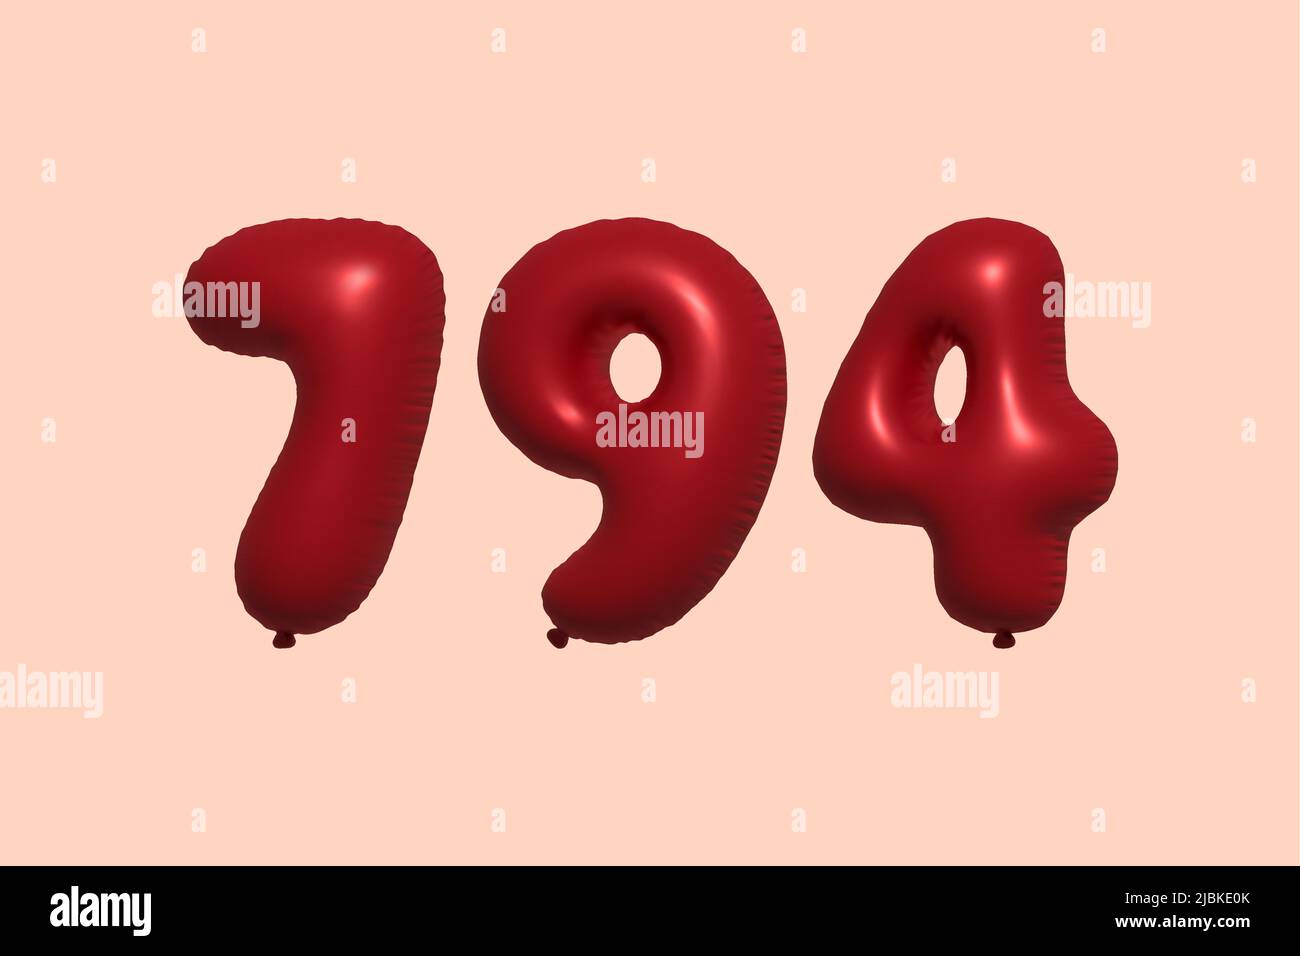 794 3D Zahlenballon aus realistischem metallischem Luftballon 3D Rendering. 3D Rote Heliumballons zum Verkauf Dekoration Party Geburtstag, Jubiläum feiern, Hochzeitsfeiertag. Vektorgrafik Stock Vektor